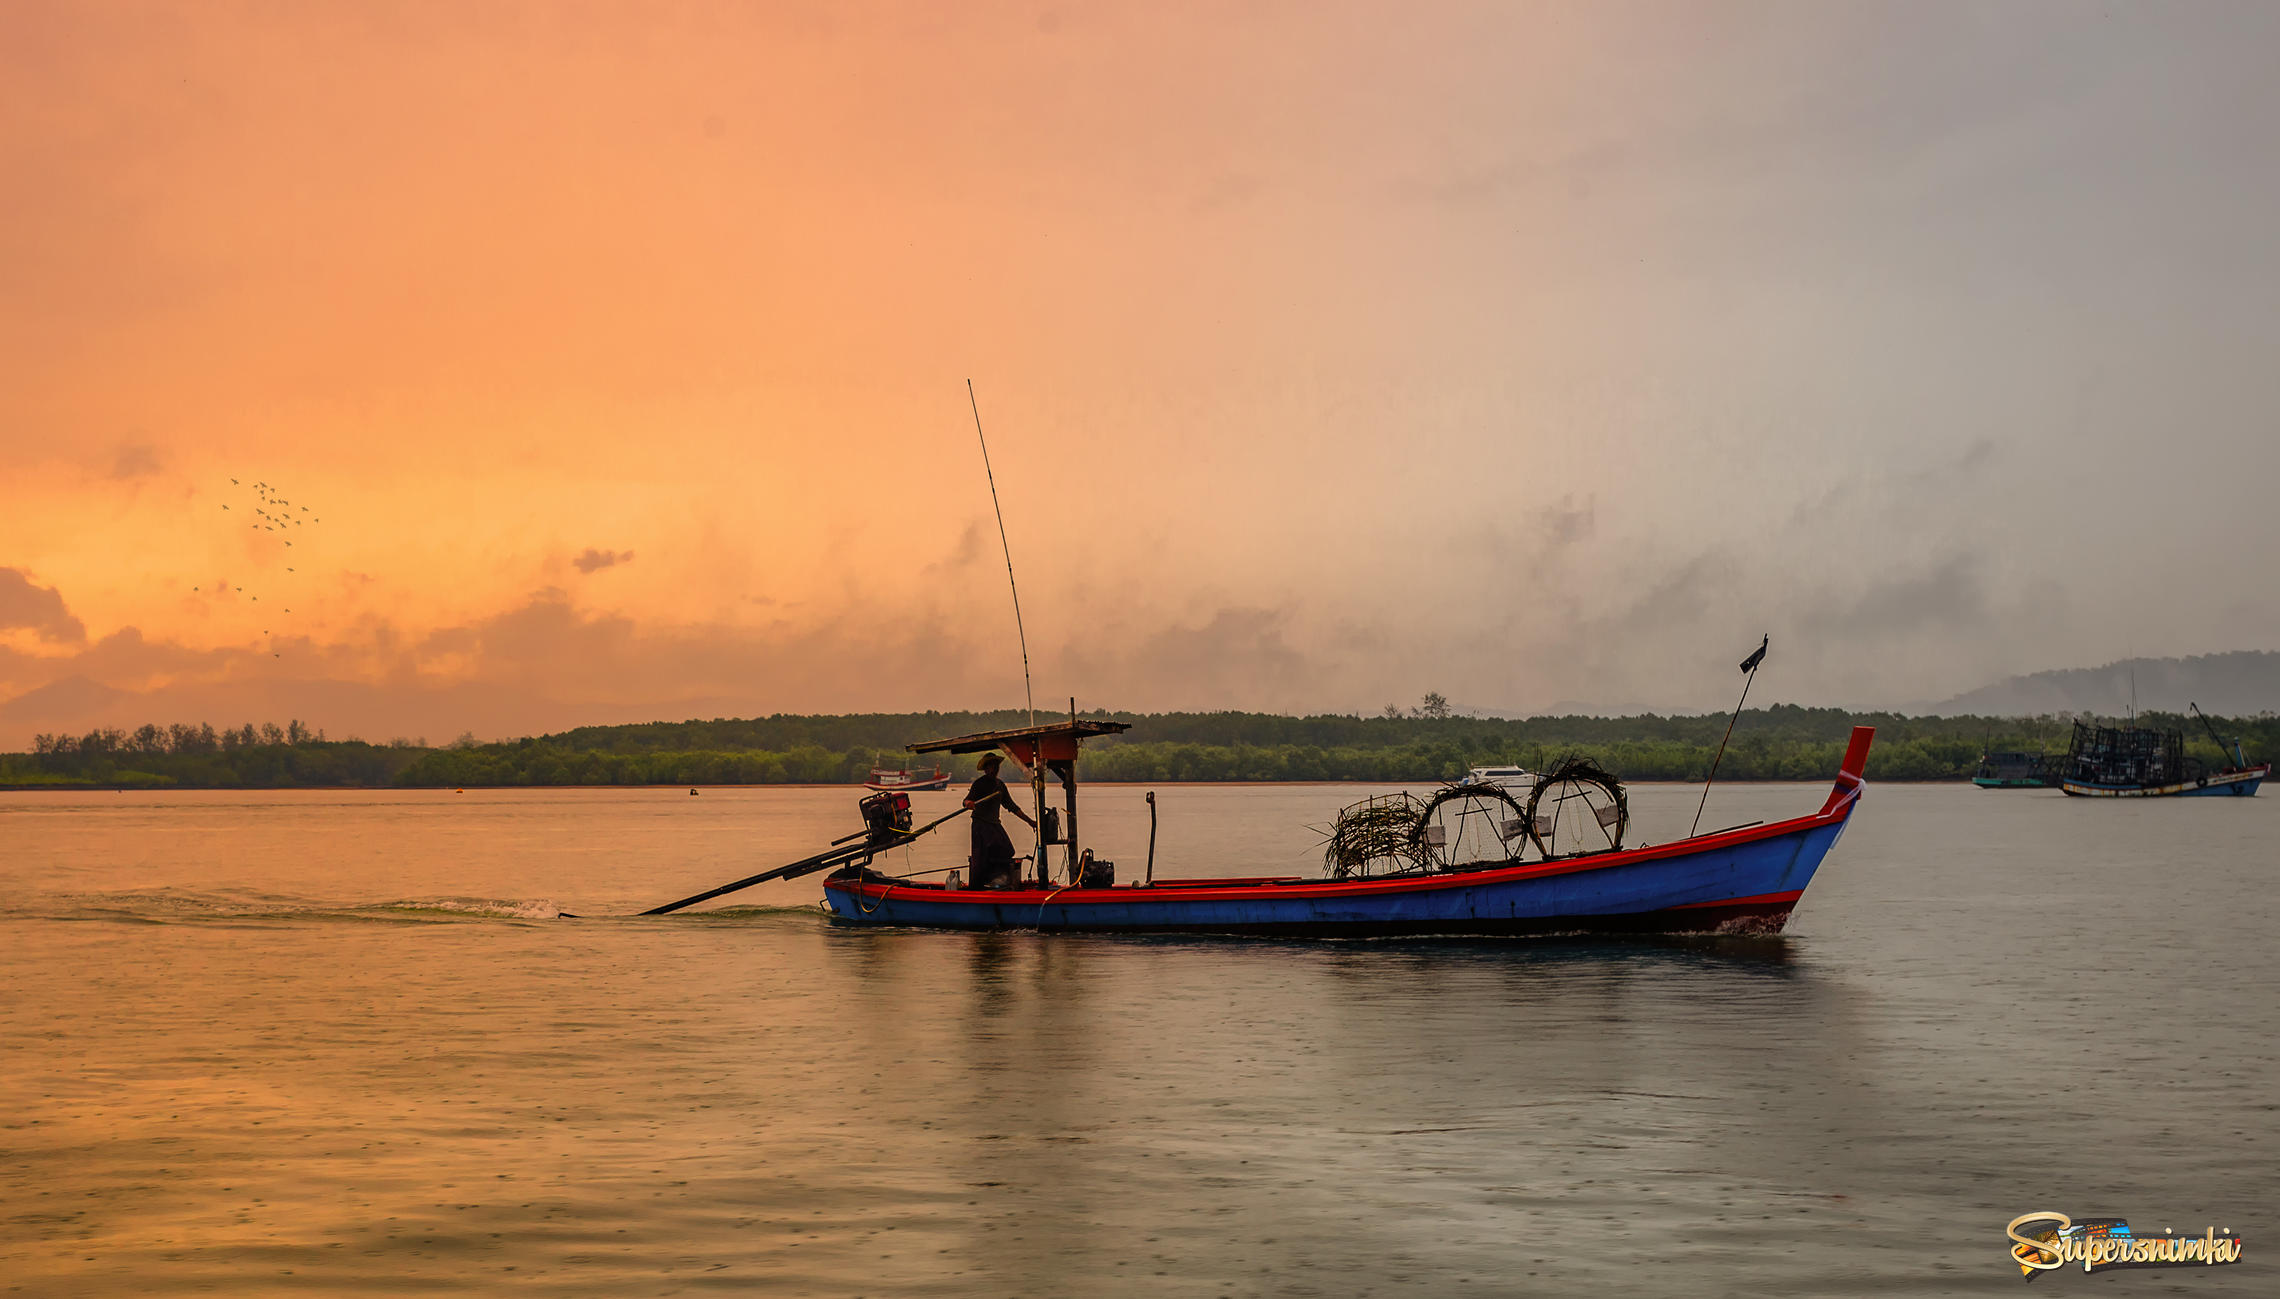 Утро,дождик и рыбак...Таиланд!